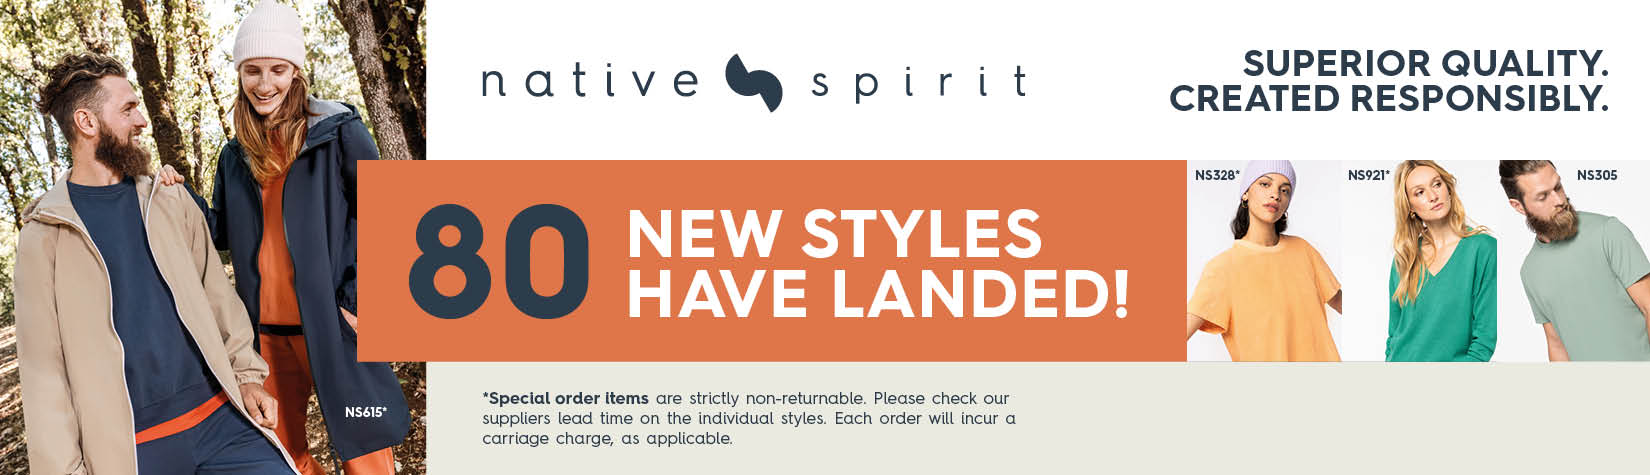 80 NEW Native Spirit styles